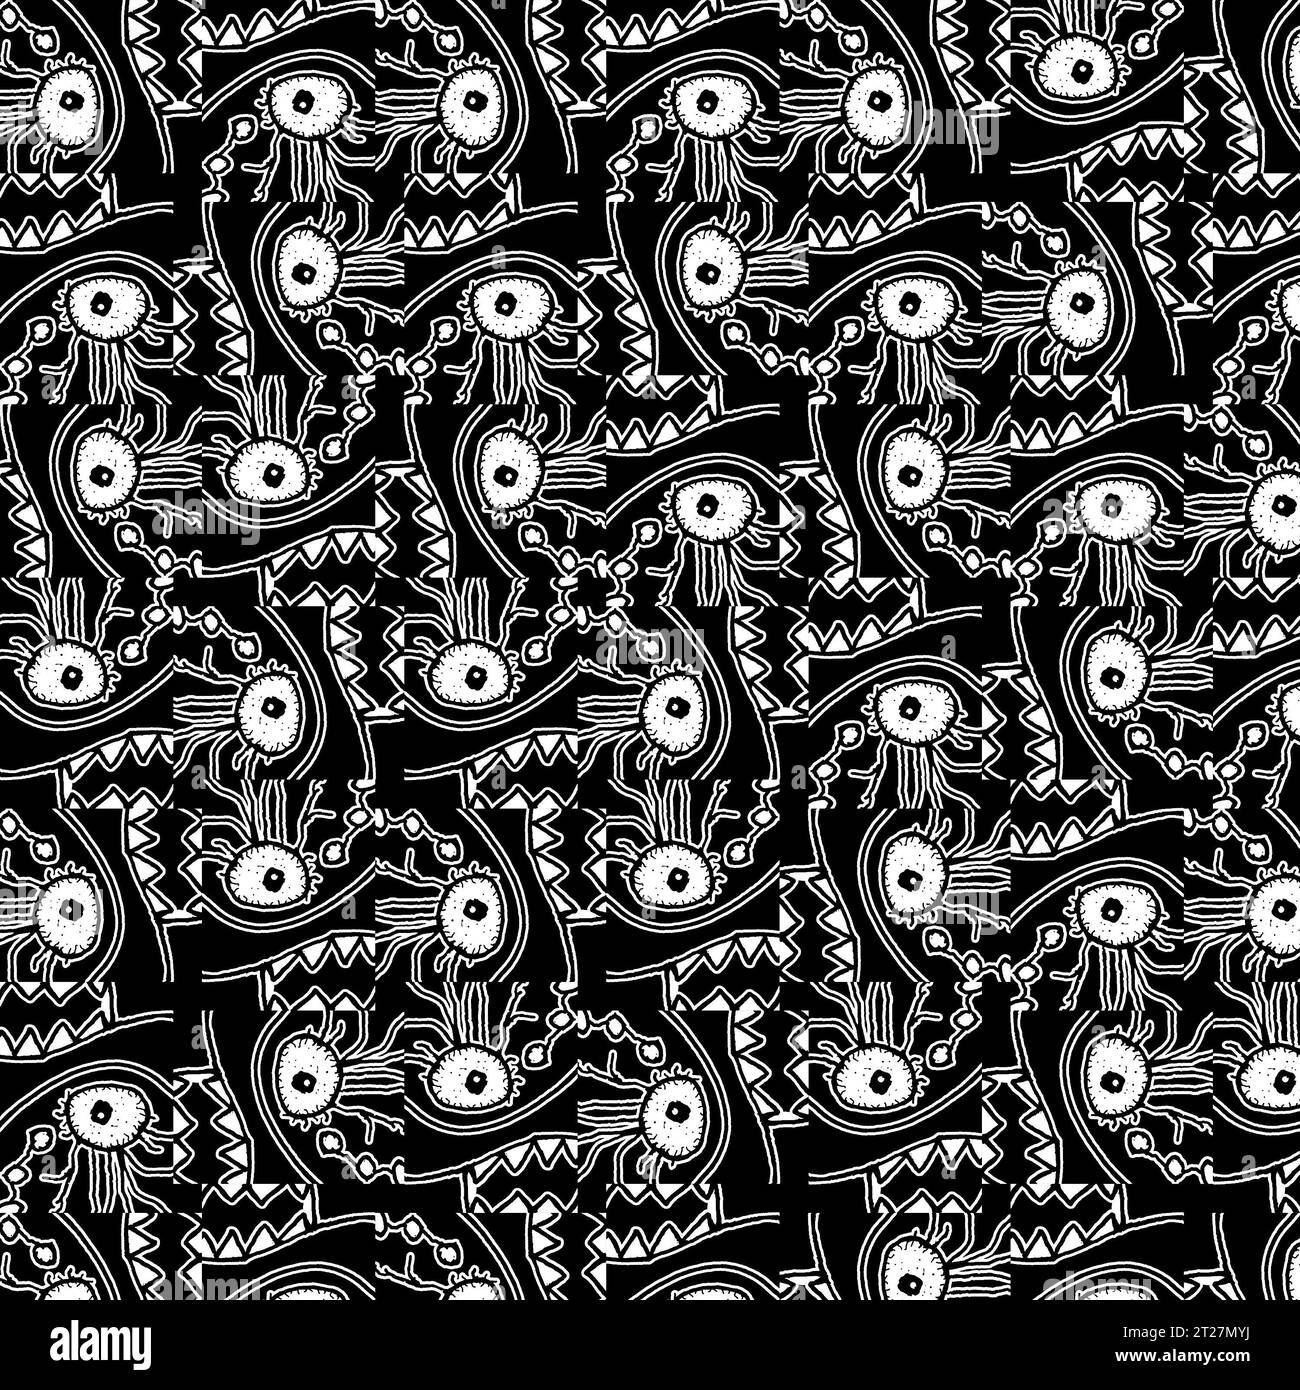 Motivo per il disegno della testa del mostro mutante modello di composizione scura in stile lineare bianco e nero Foto Stock